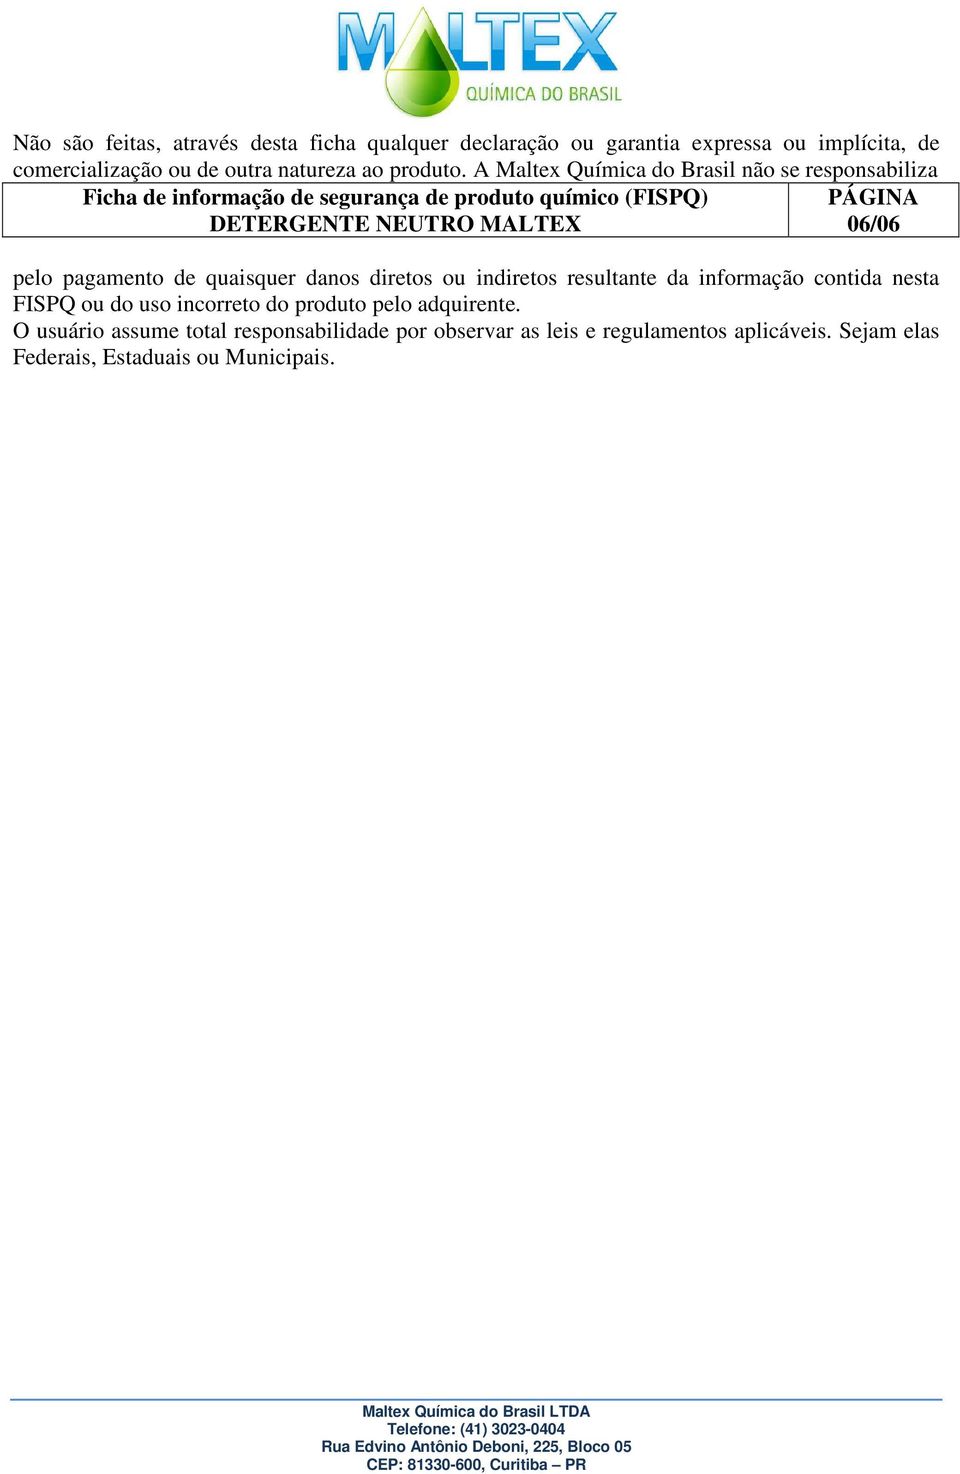 A Maltex Química do Brasil não se responsabiliza Ficha de informação de segurança de produto químico (FISPQ) 06/06 pelo pagamento de